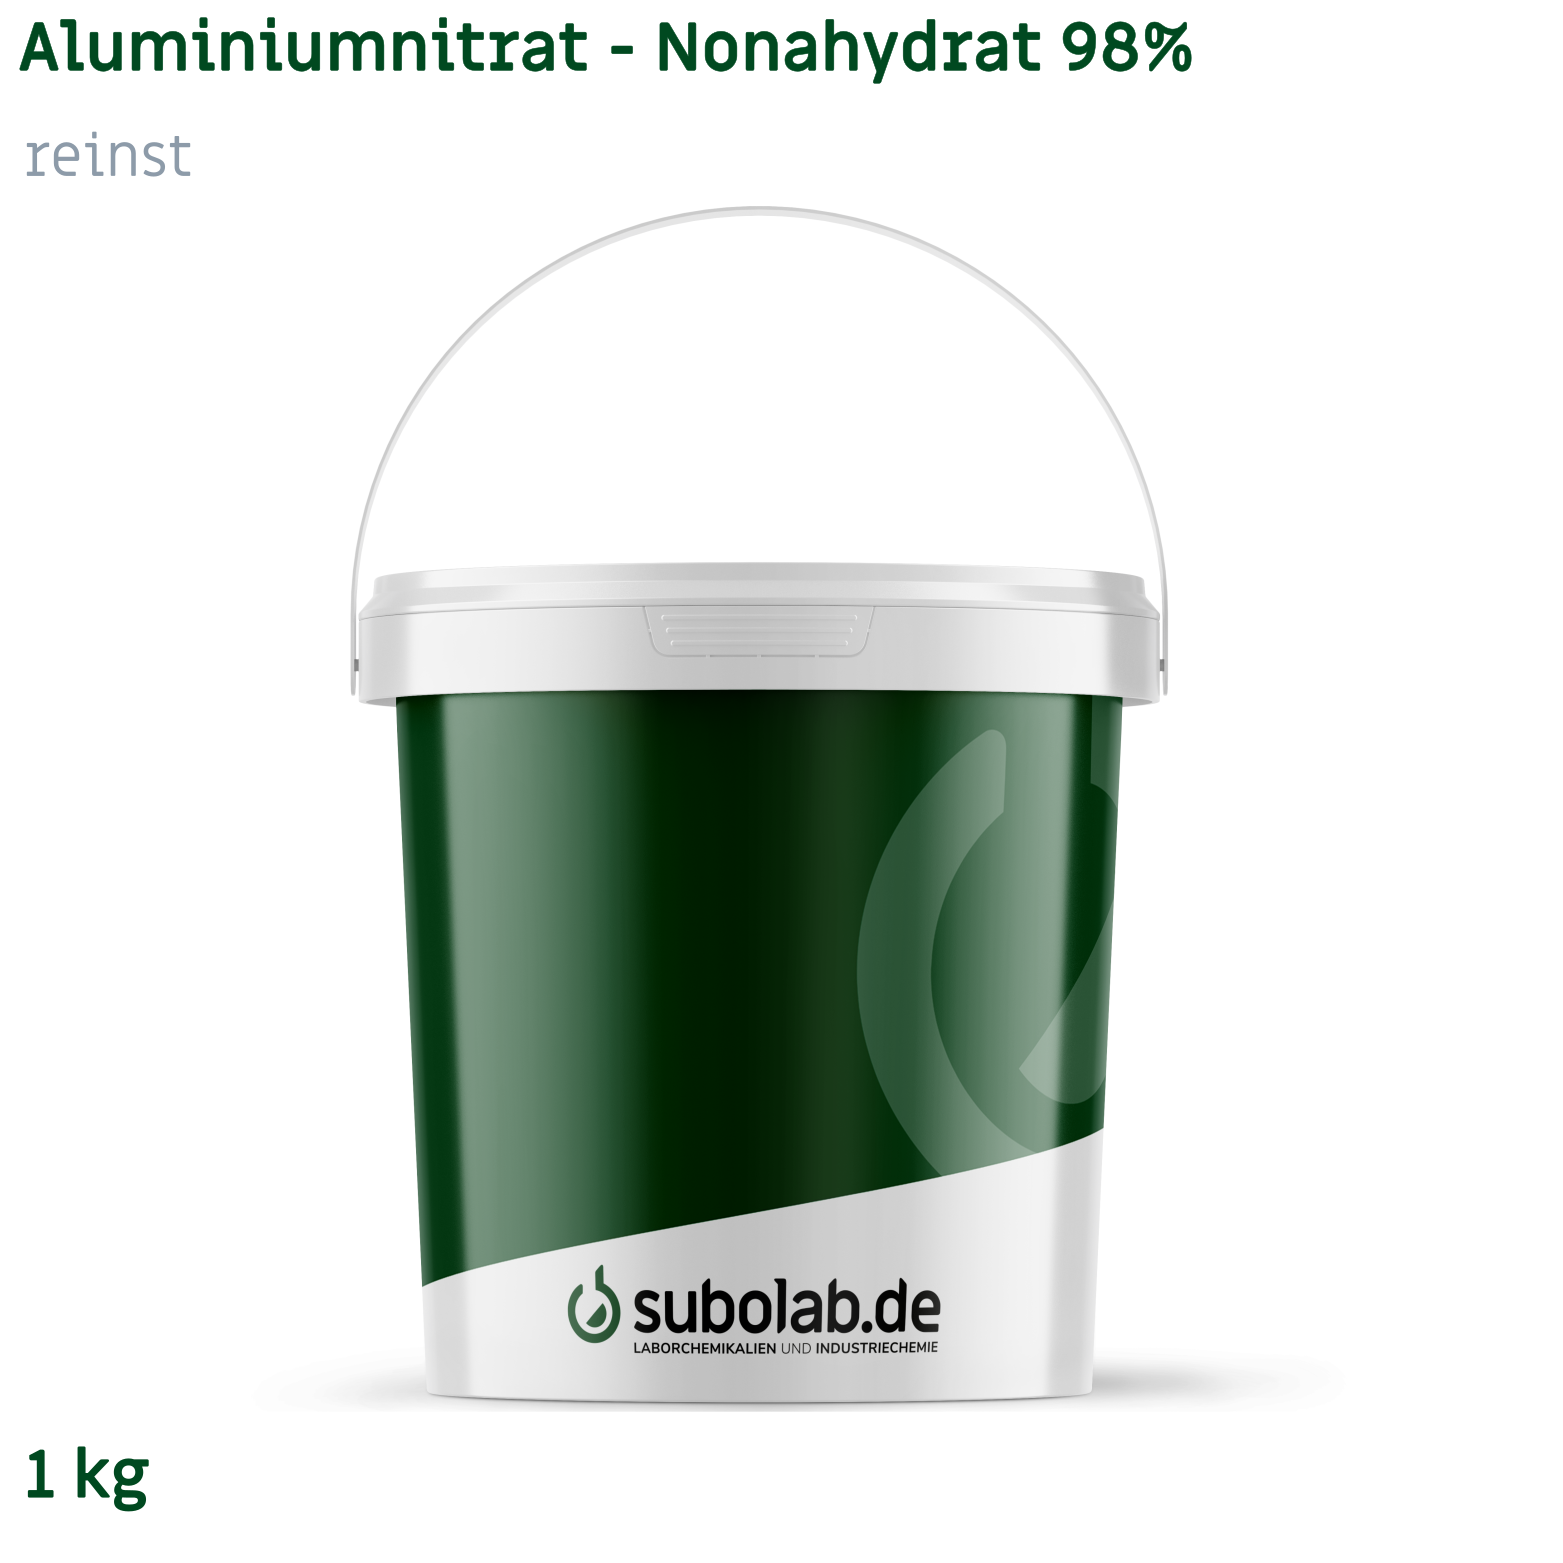 Bild von Aluminiumnitrat - Nonahydrat 98% reinst (1 kg)